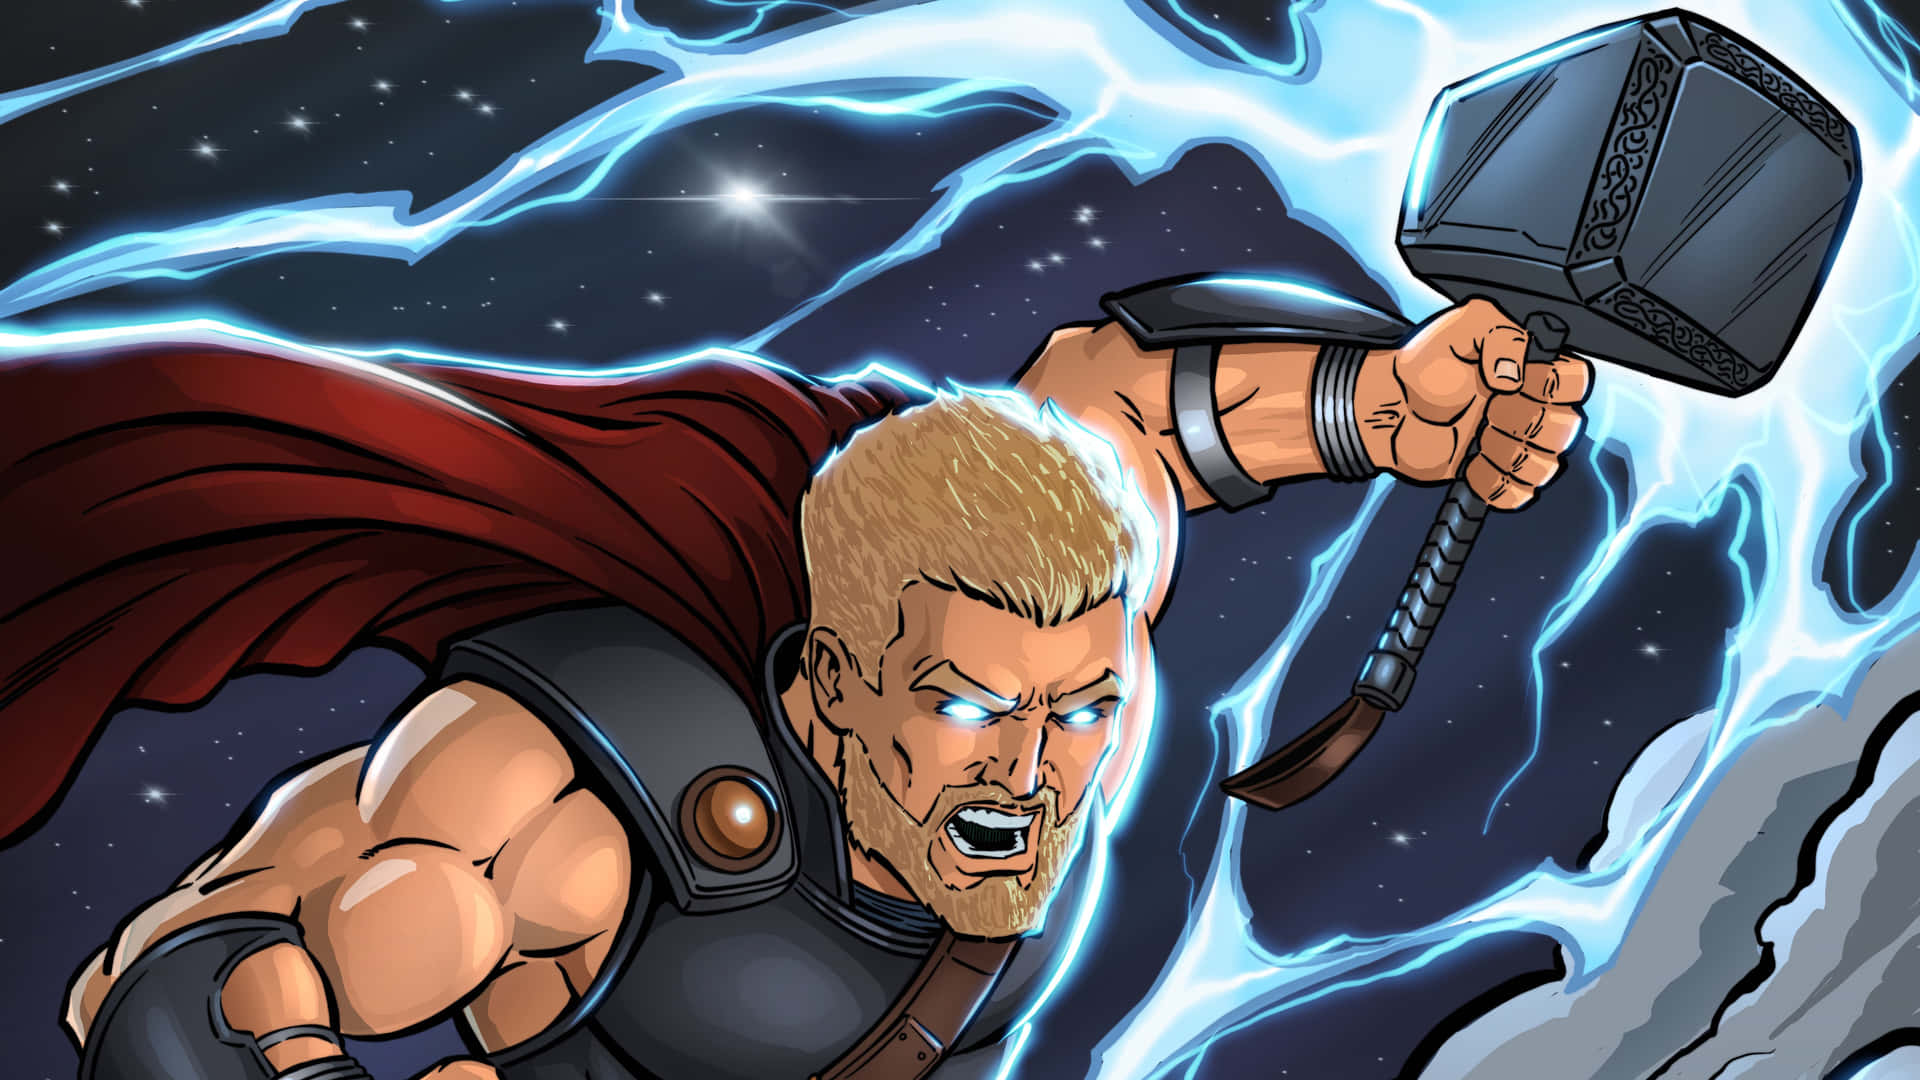 Thor battles Hela in Ragnarok Wallpaper